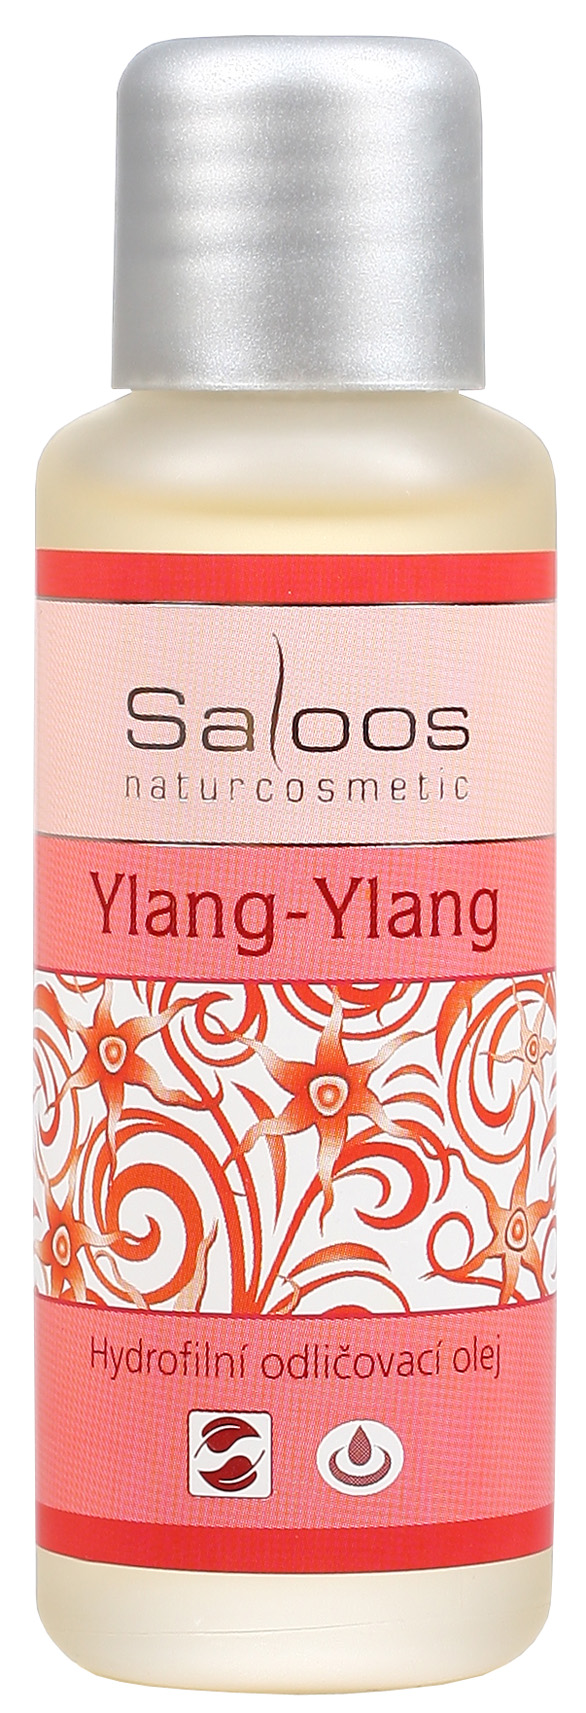 Saloos Hydrofilný odličovací olej - Ylang-Ylang 50 ml